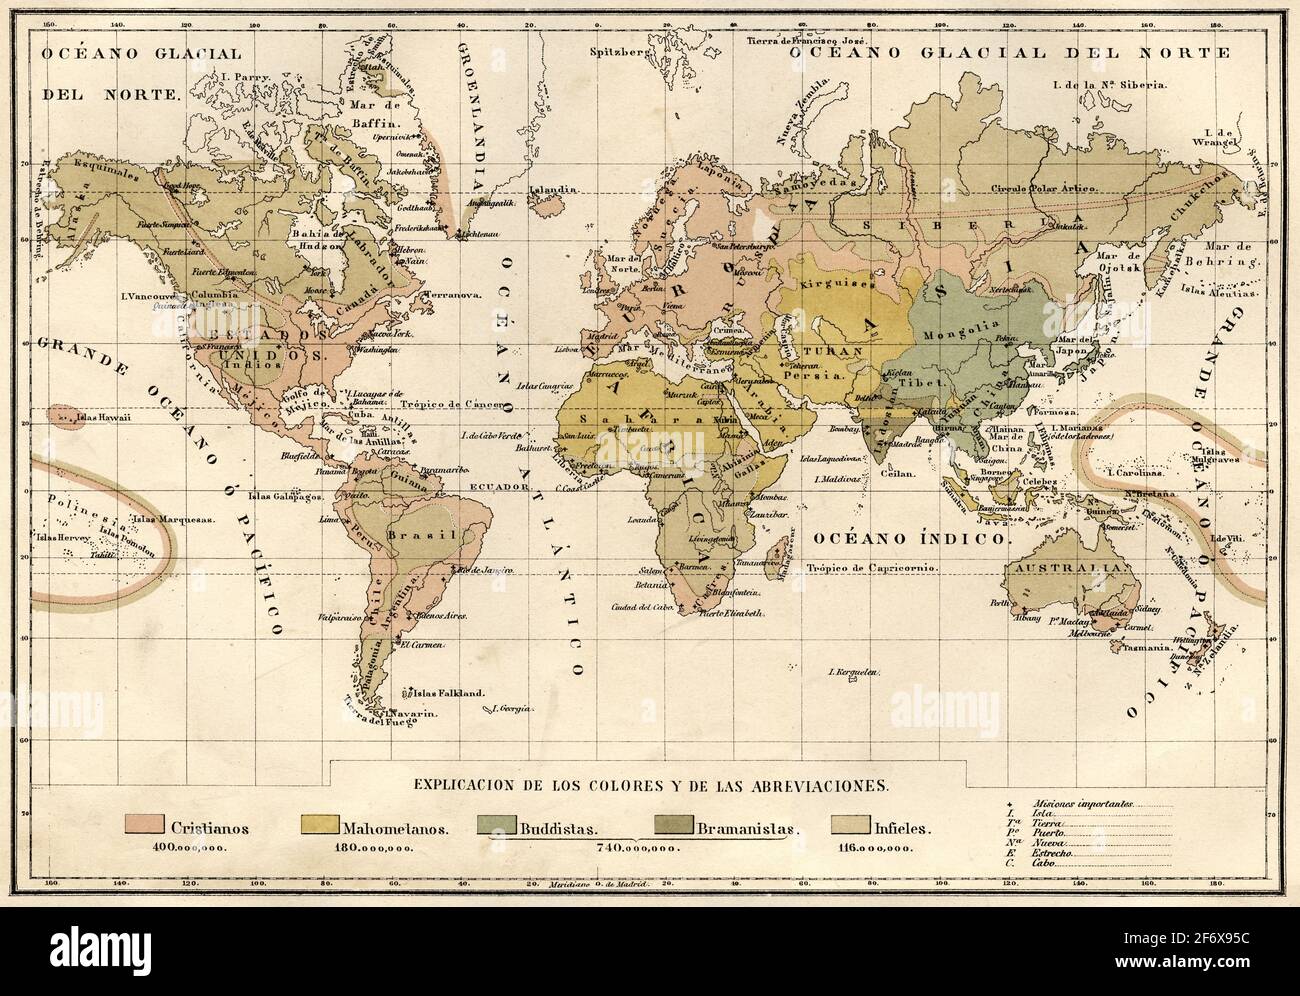 Alte Weltkarte aus dem 19. Jahrhundert mit Angaben zu den verschiedenen Religionen auf der Erde. Alte Illustration aus dem 19. Jahrhundert von El Mundo Ilustrado 1879 Stockfoto